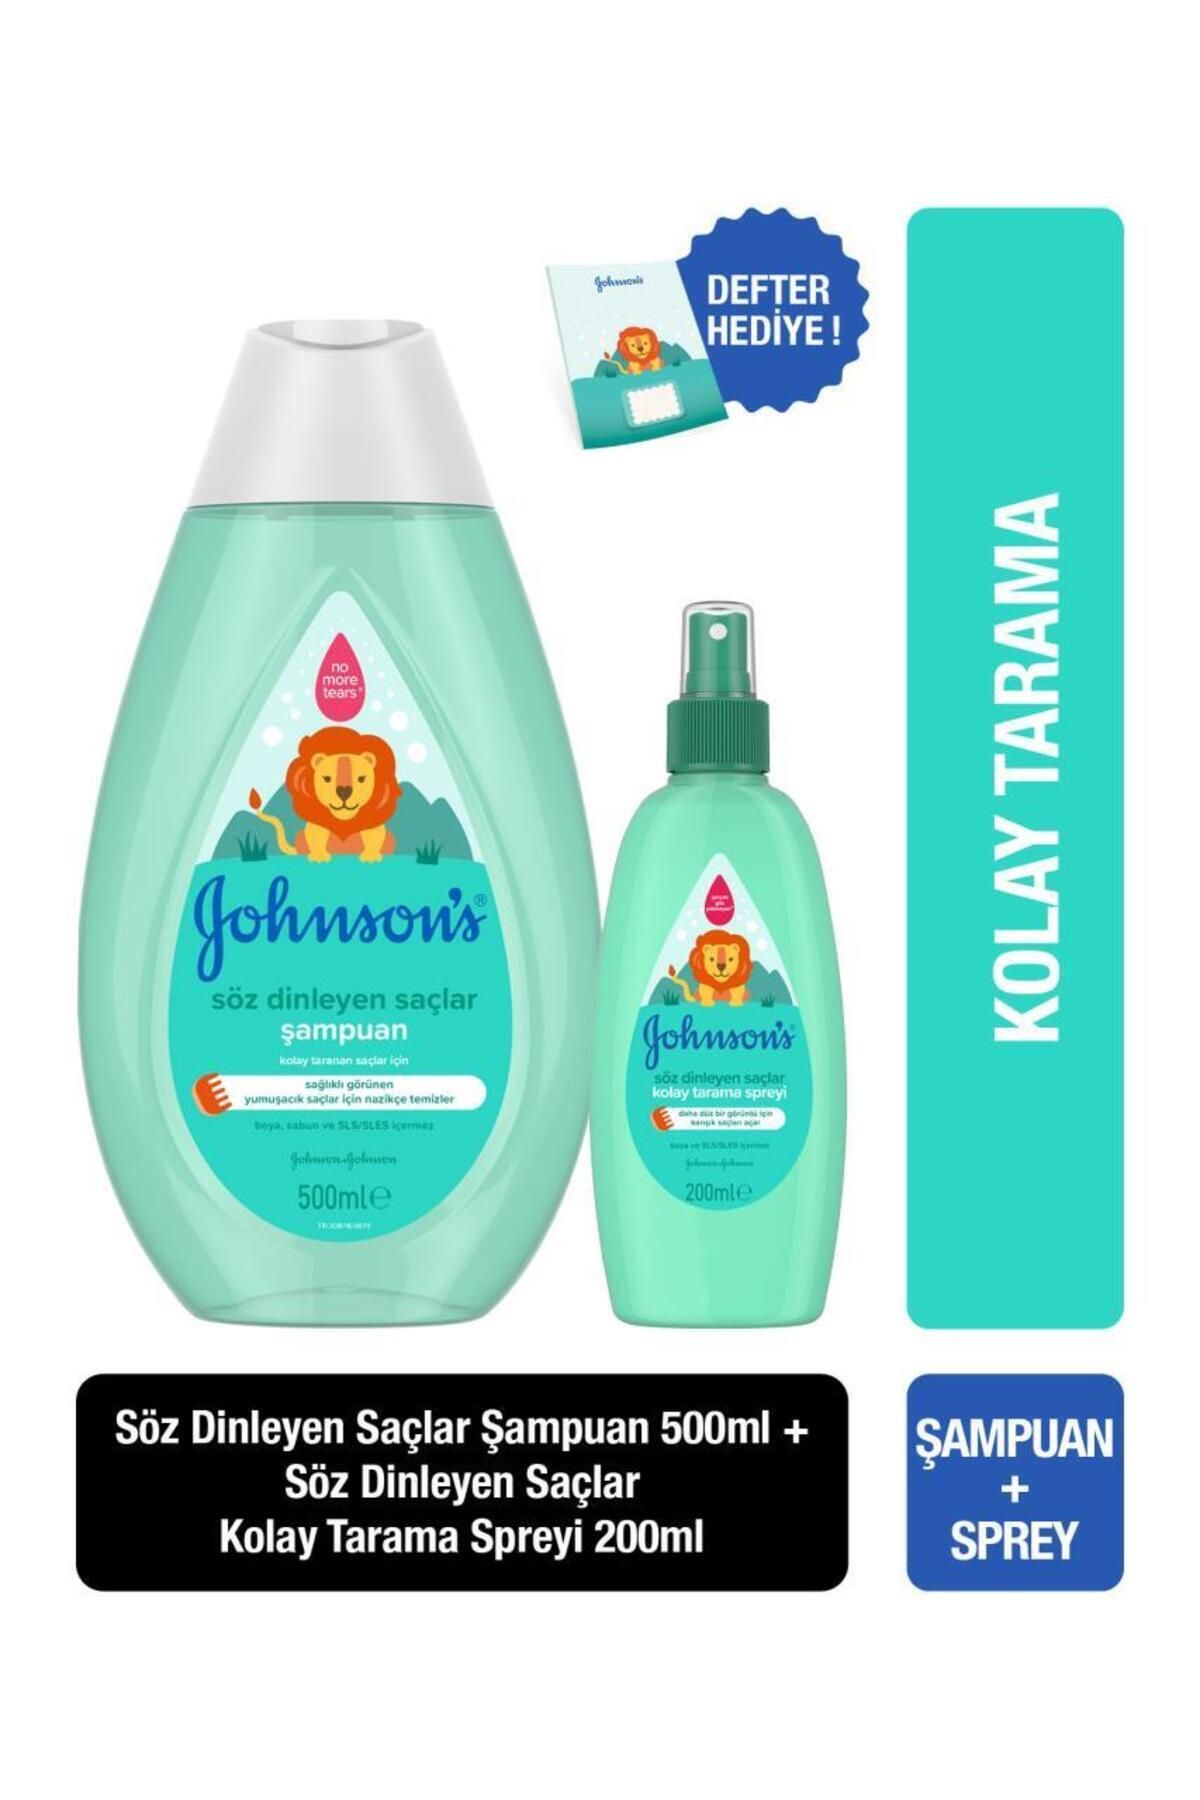 Johnson's Şampuan Kral Şakir Söz Dinleyen Şaçlar 500 ml Söz Dinleyen Saçlar Kolay Tarama Spreyi 20